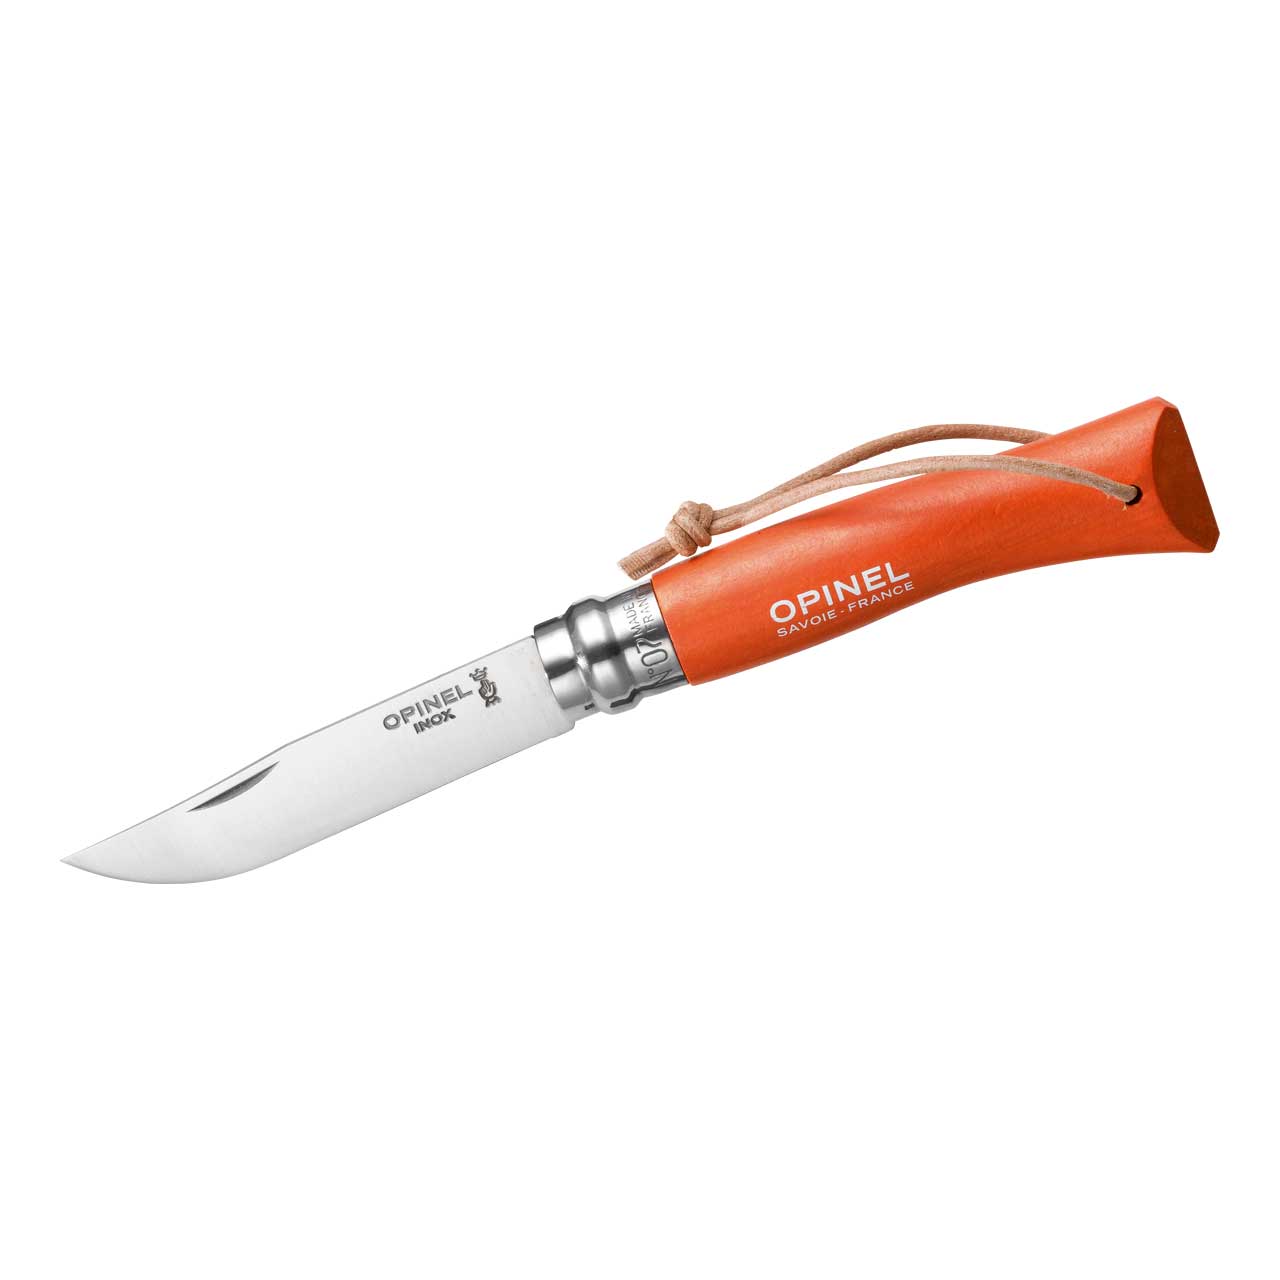 Opinel-Messer Nr. 7, rostfreier Sandvik-Stahl 12C27, orangefarbener Buchenholzgriff, Lederriemen, V